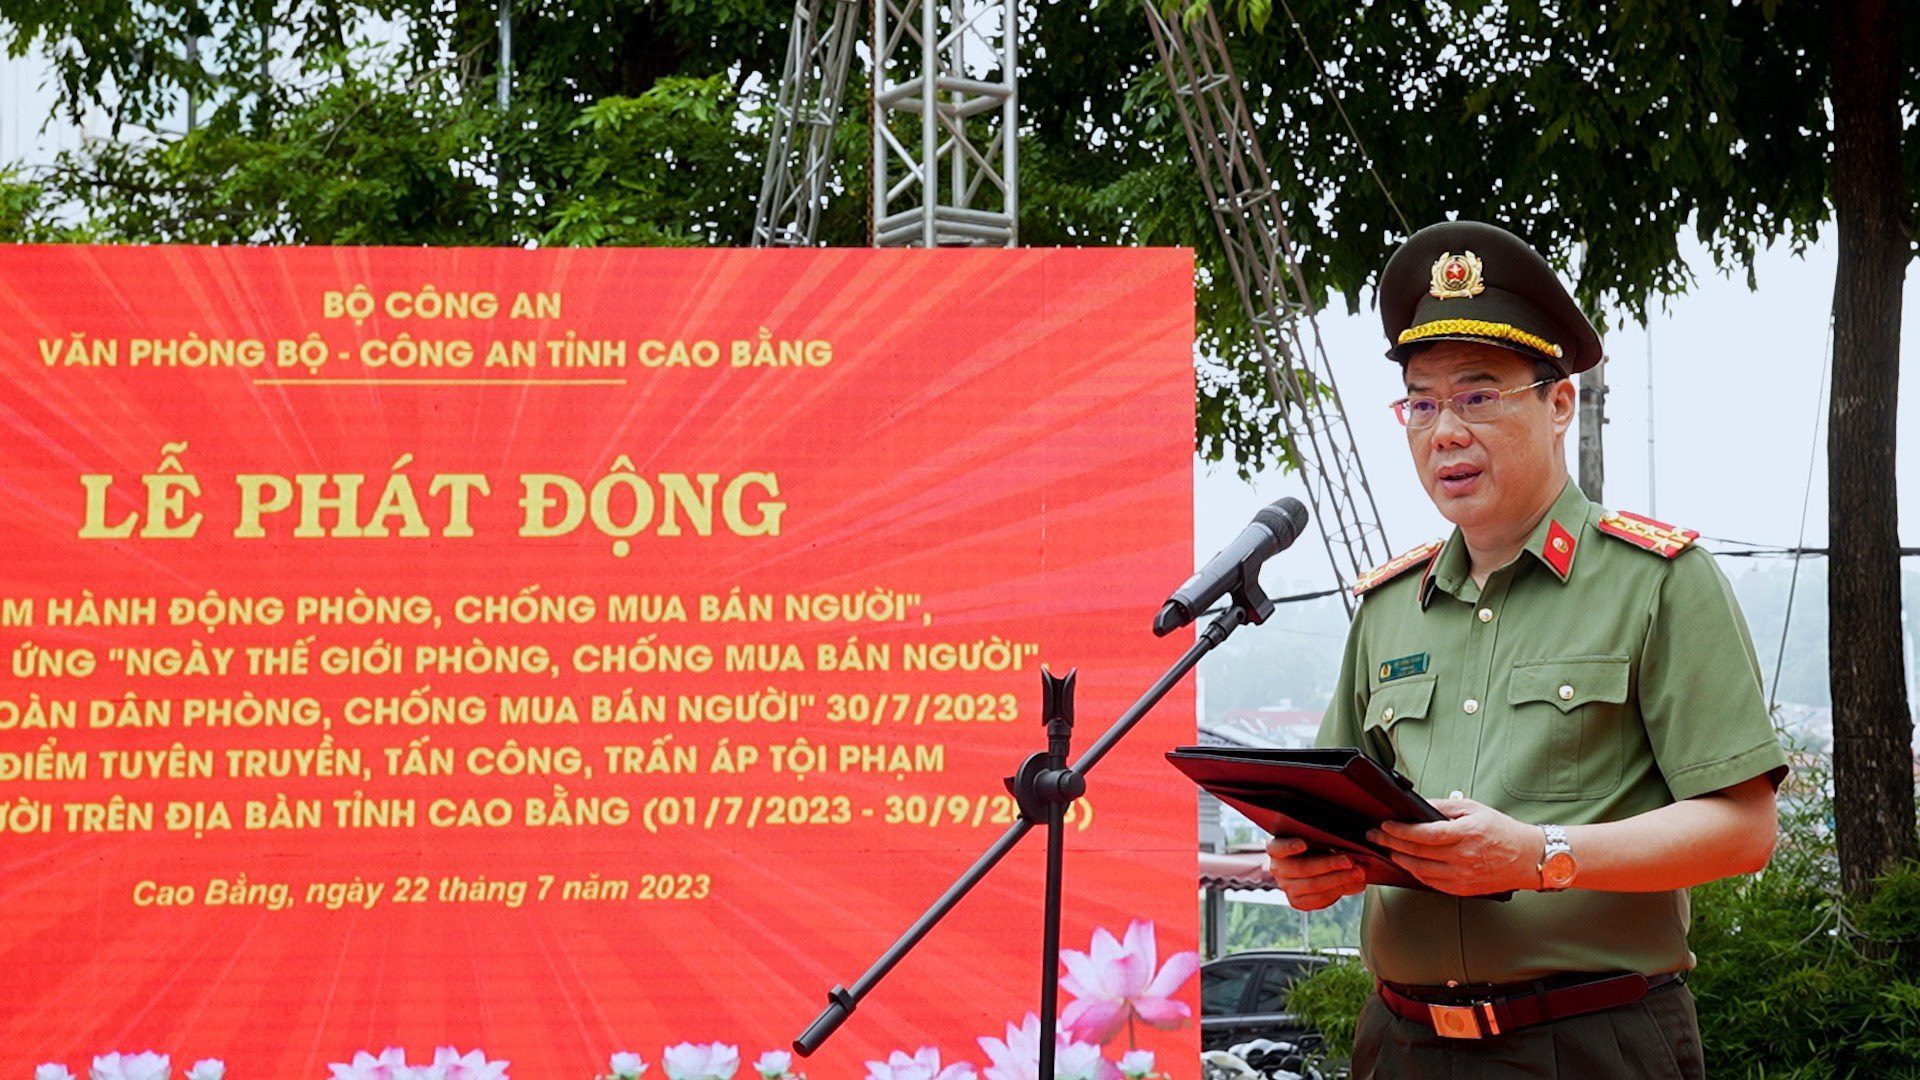 Đại tá Vũ Hồng Quang phát biểu tại buổi lễ. Ảnh: Thanh Tuấn.